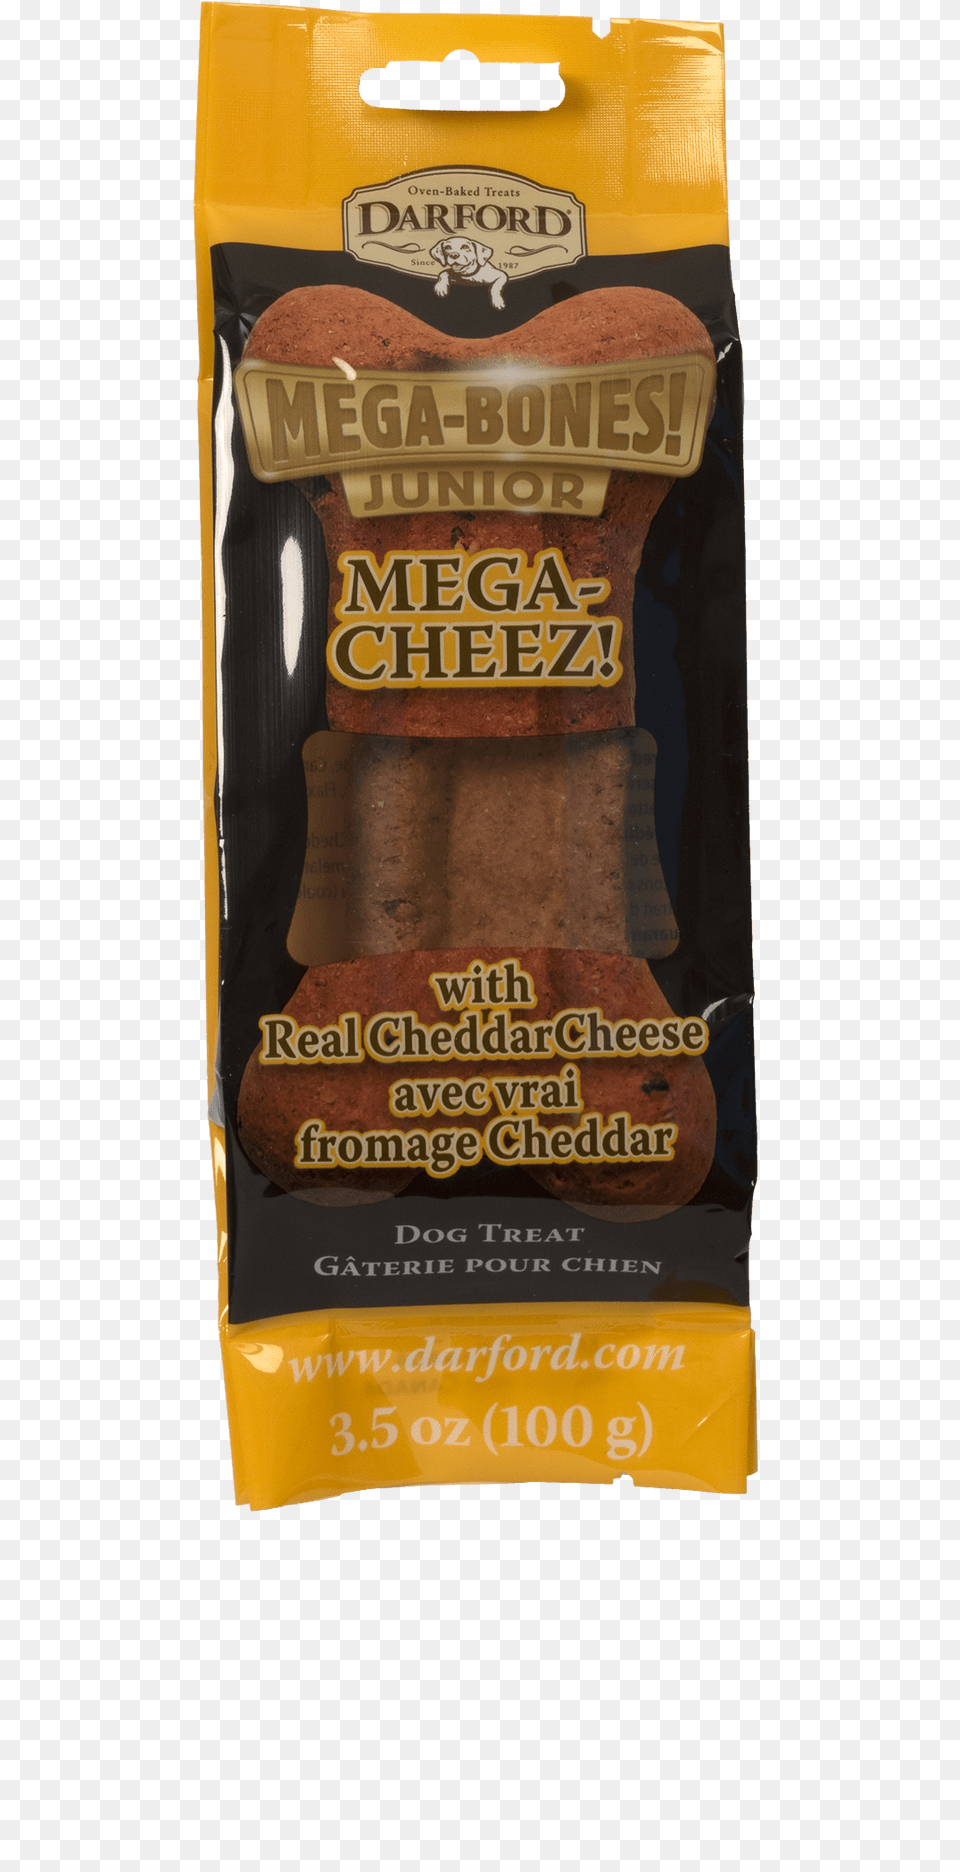 Darford Mega Bones Cheese Jr, Food, Ketchup Free Png